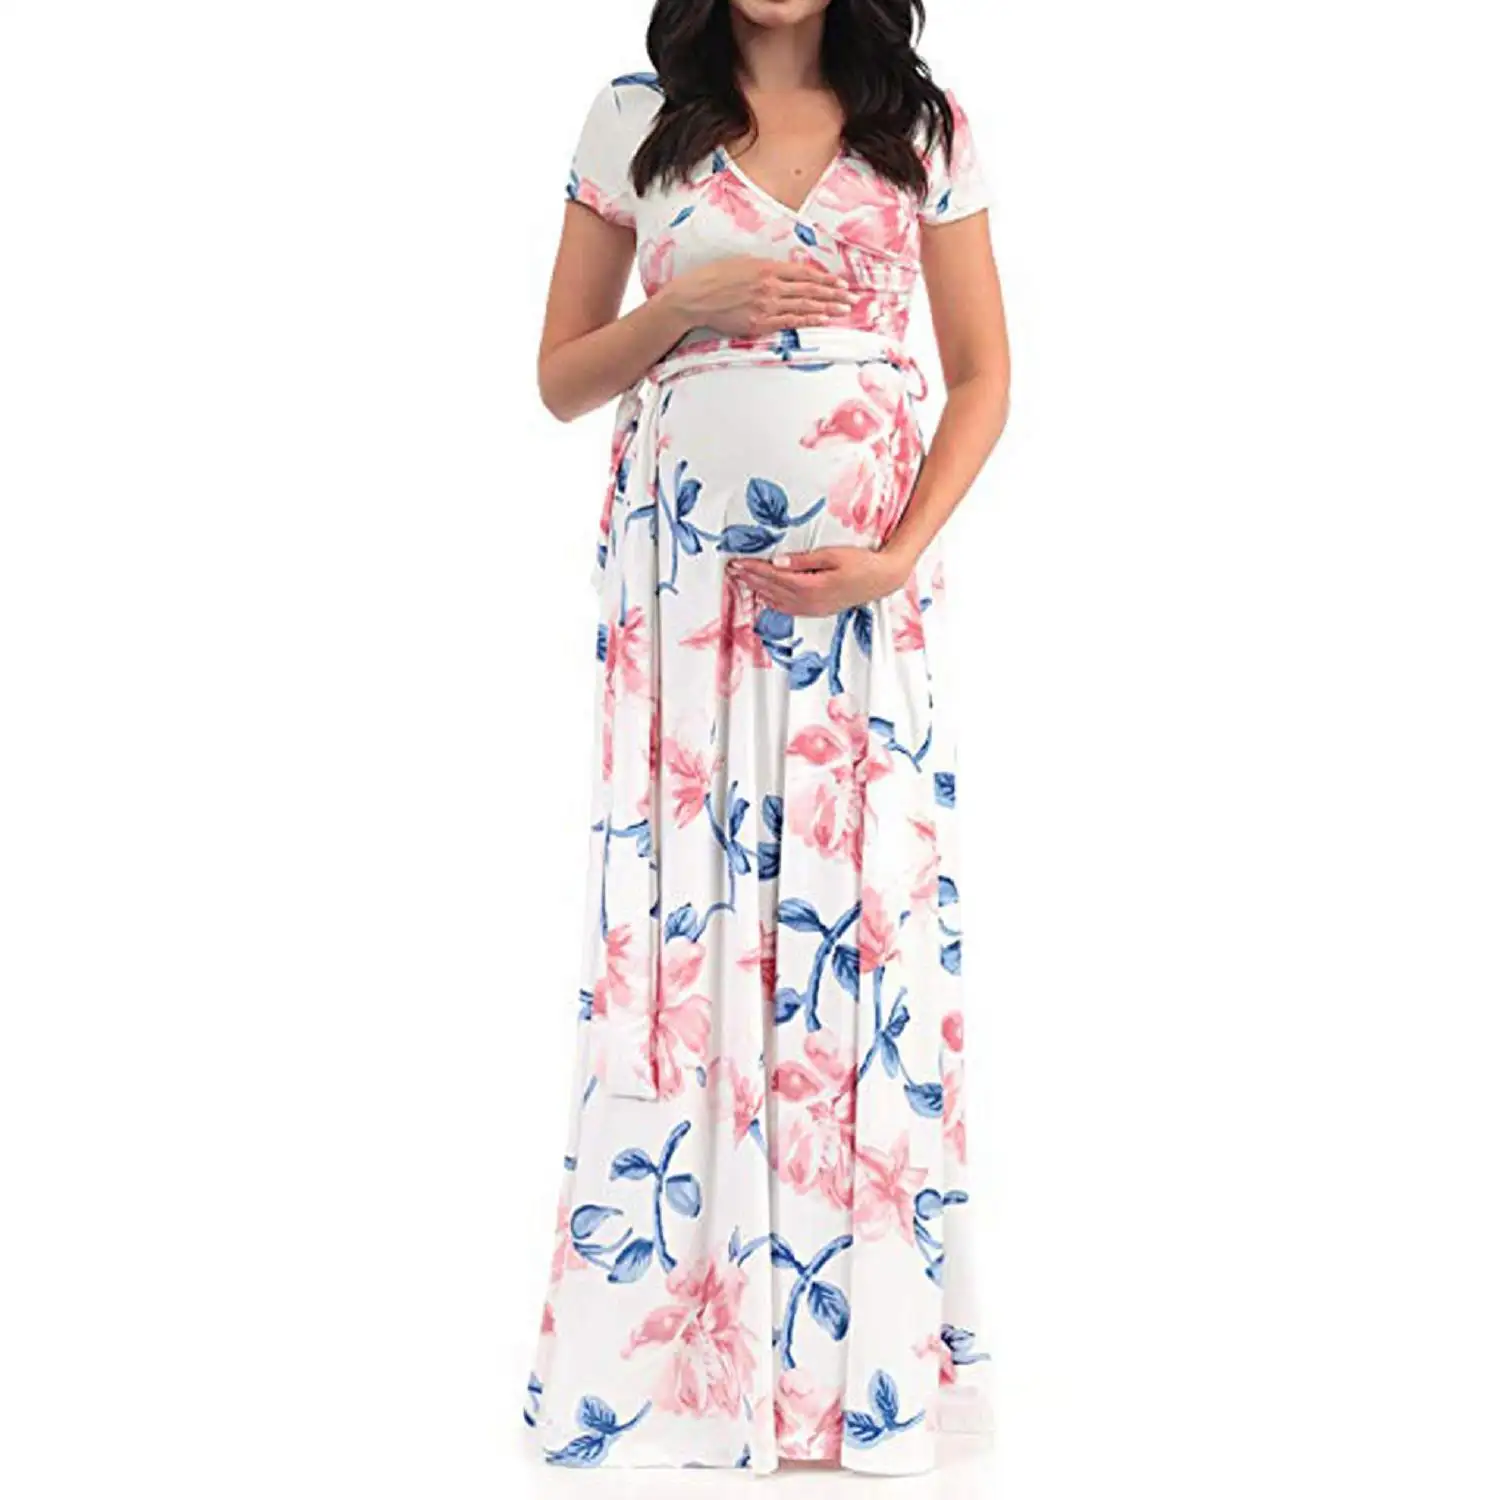 Robe de maternité, motif Floral, vêtements d'été, pour femme enceinte, tenue de maternité